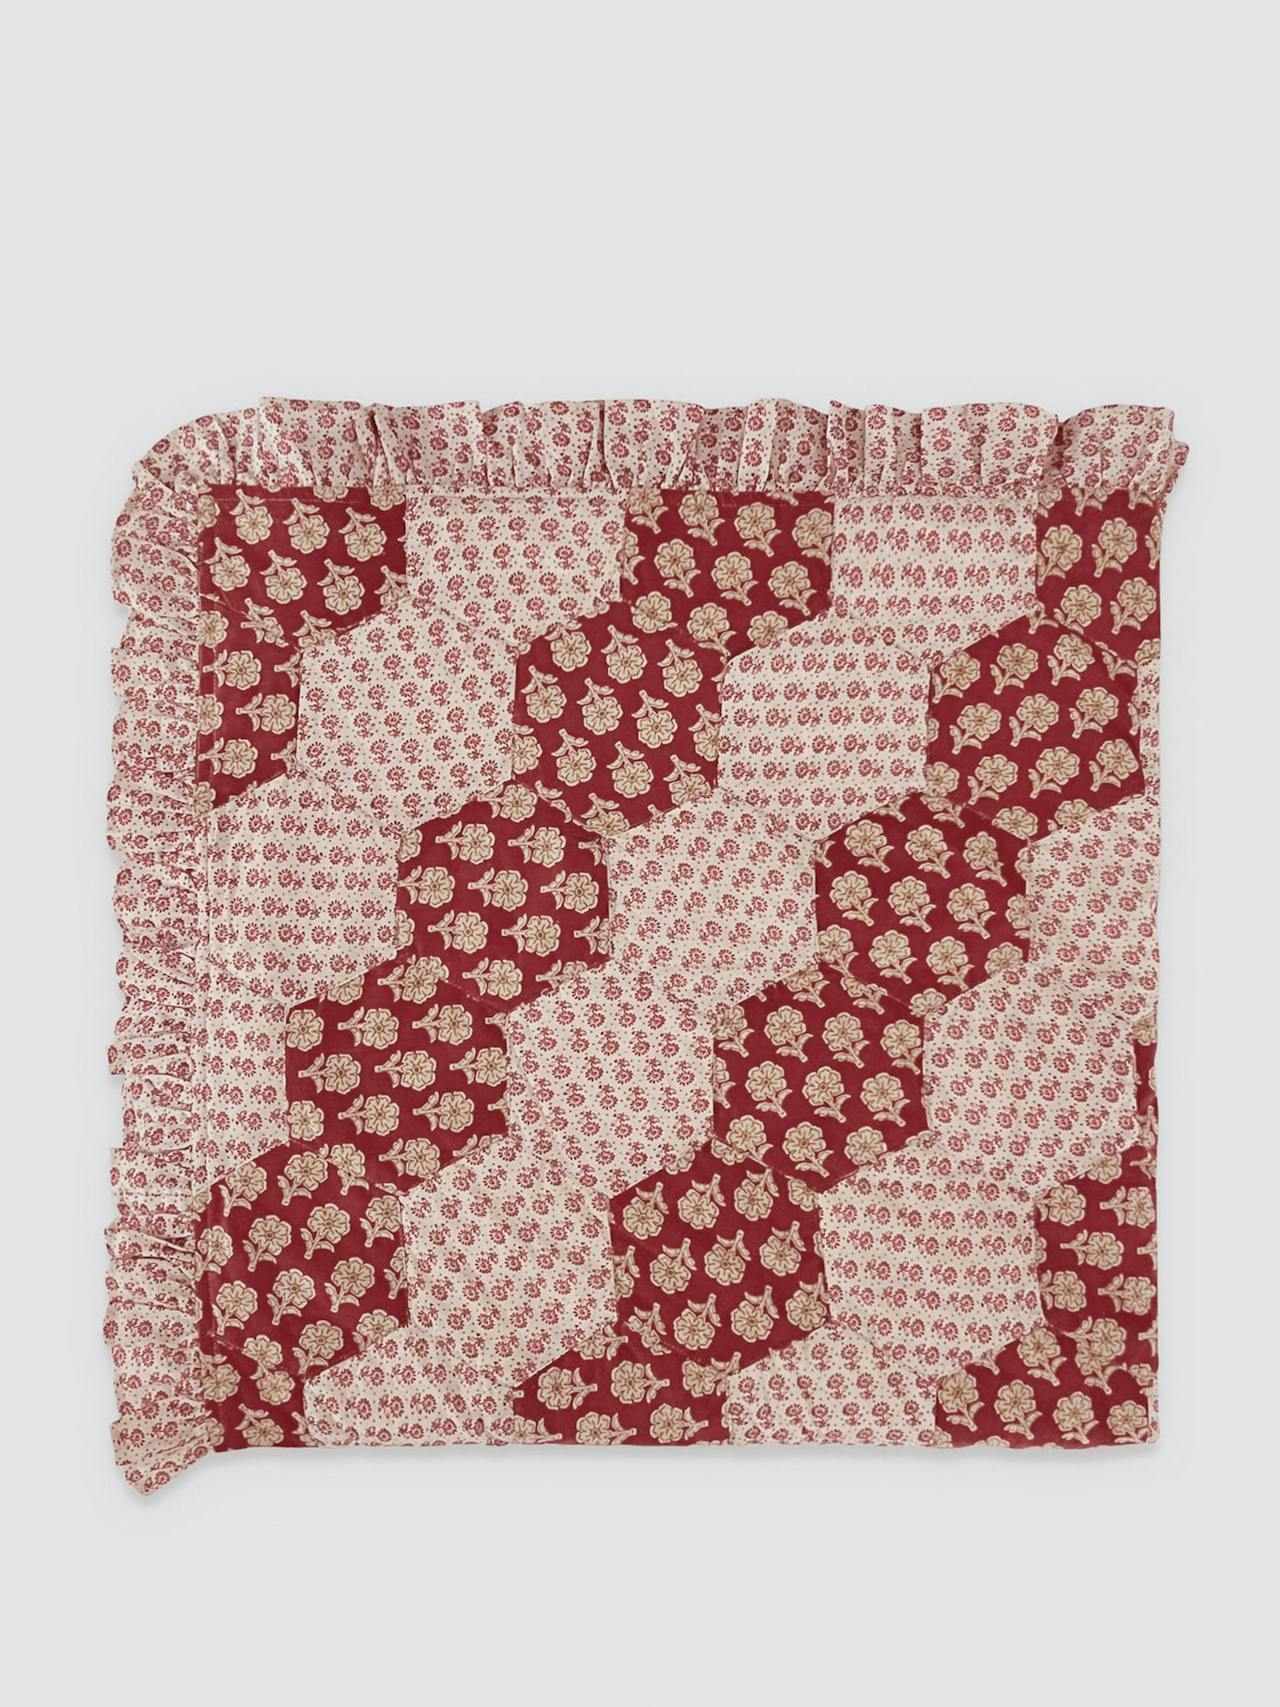 Hexagon patchwork blanket